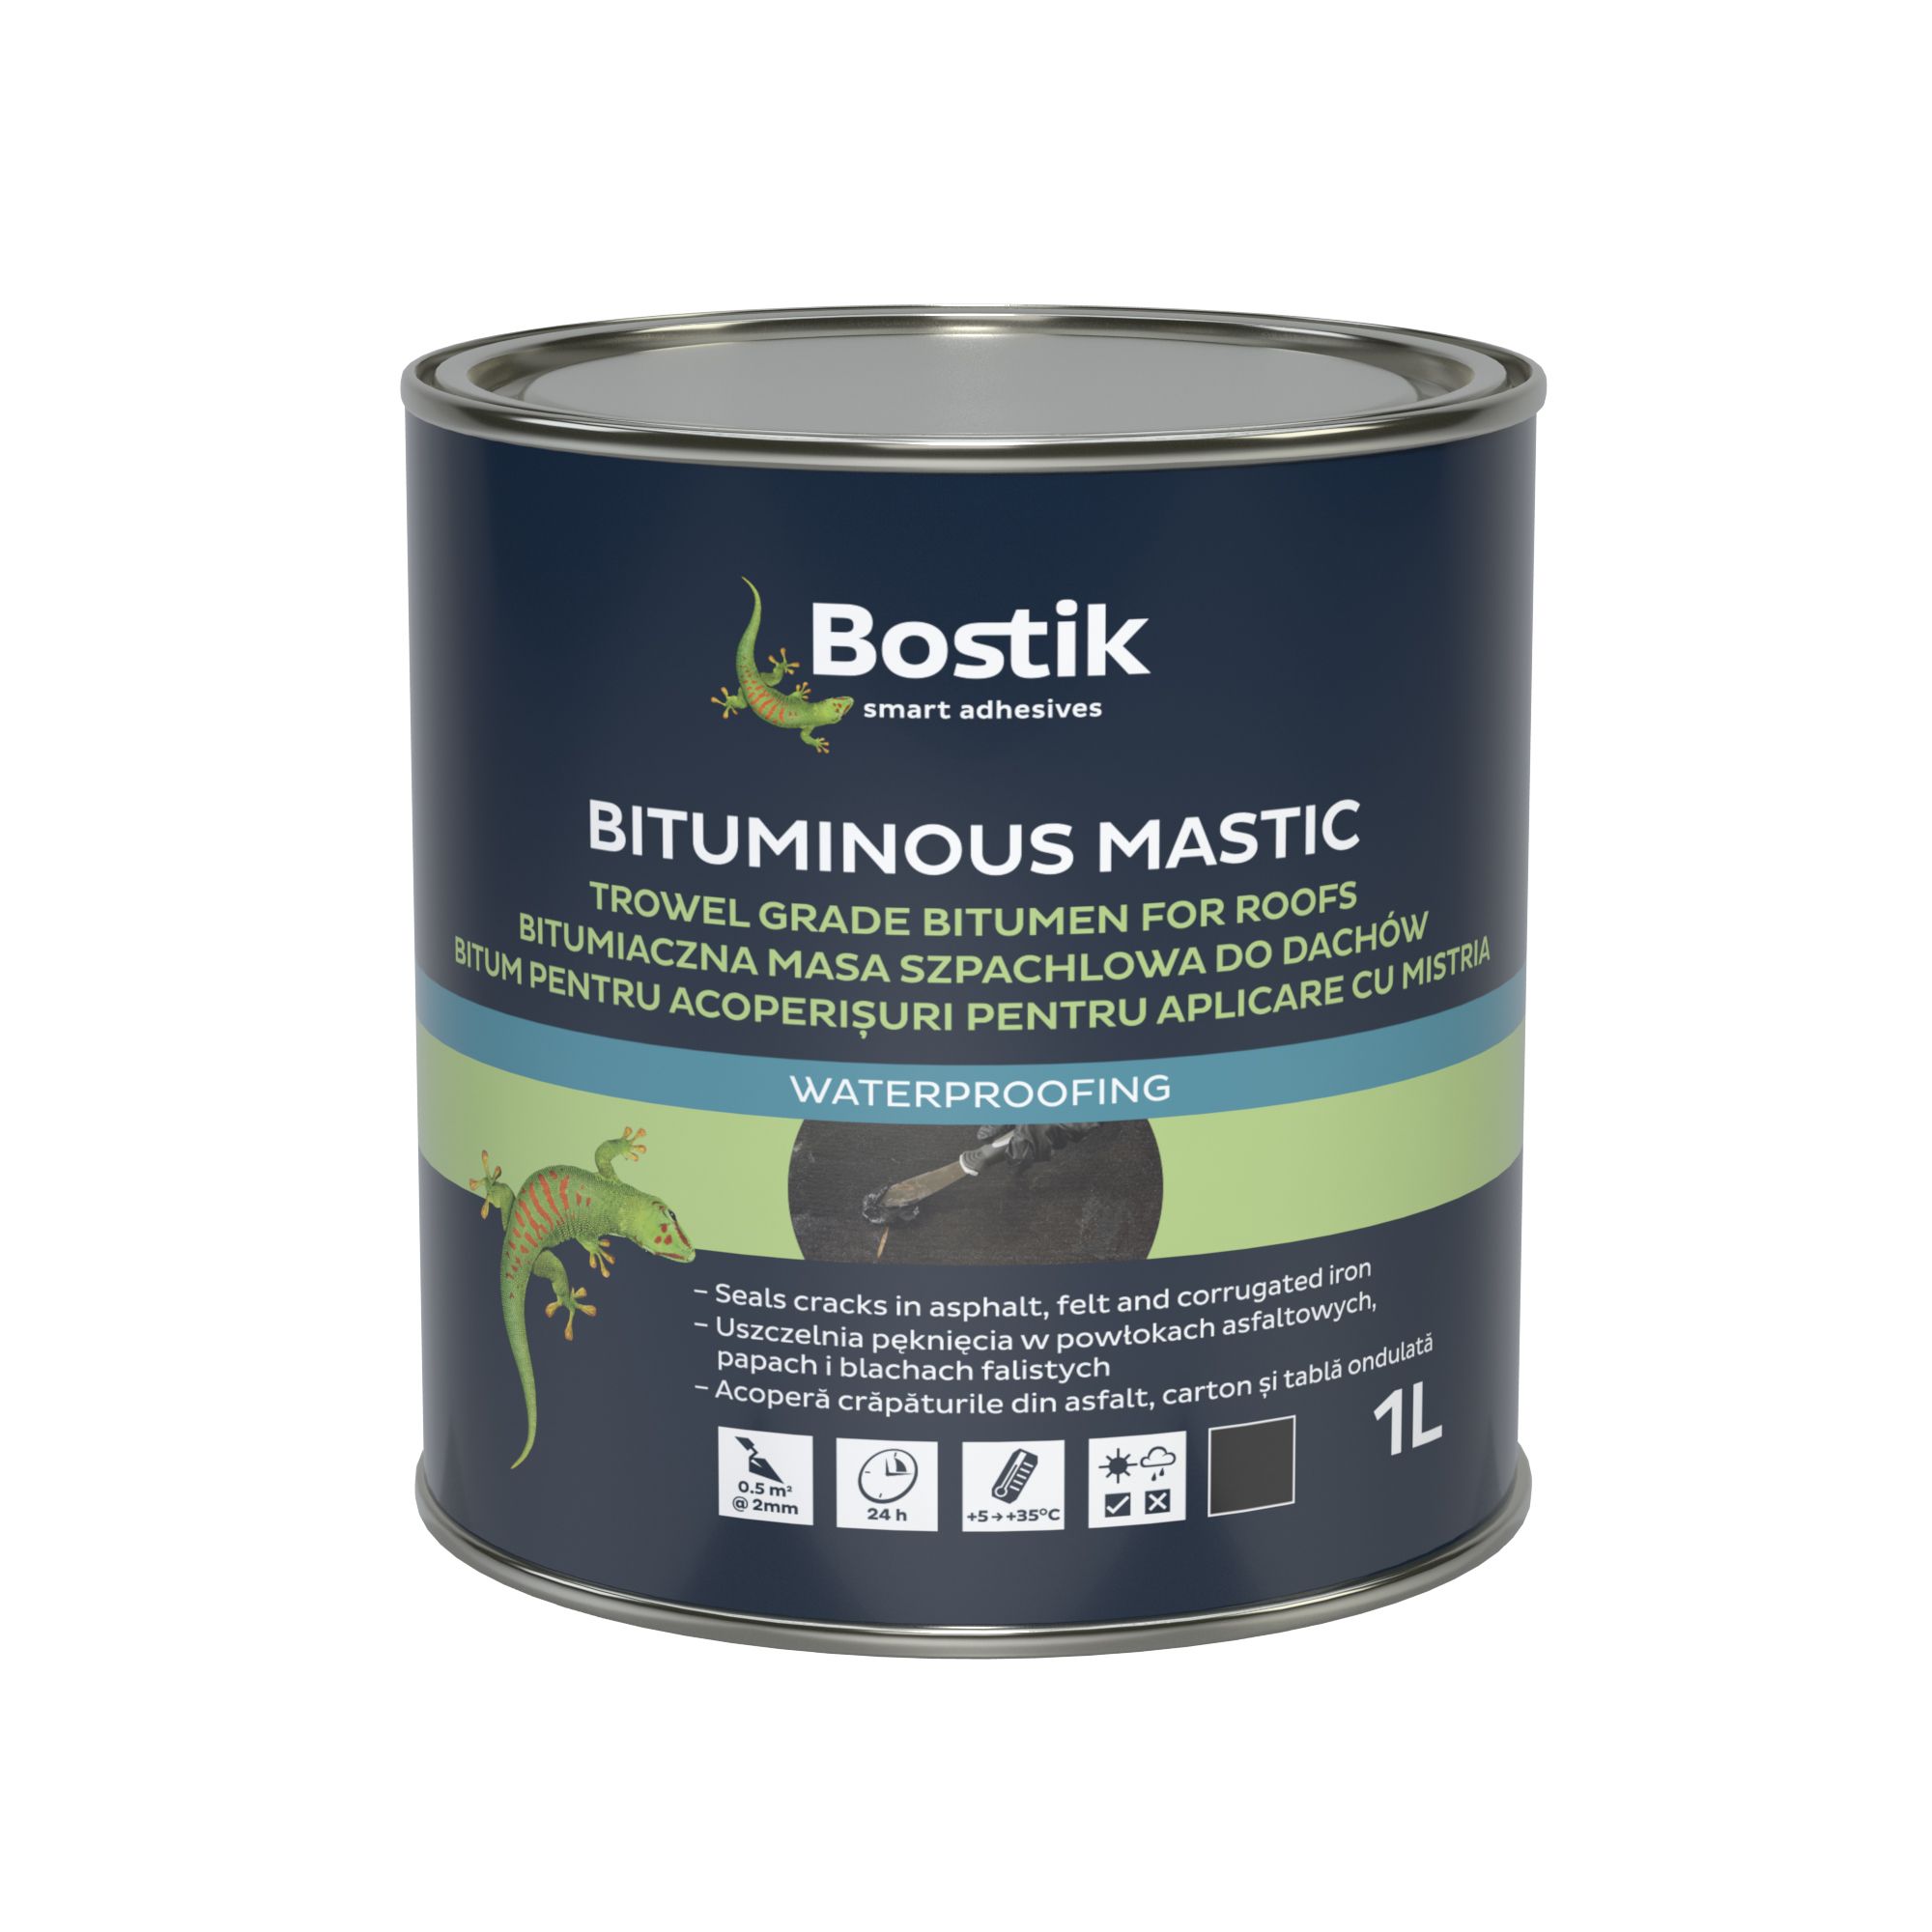 Bostik Black Bituminous mastic, 1L